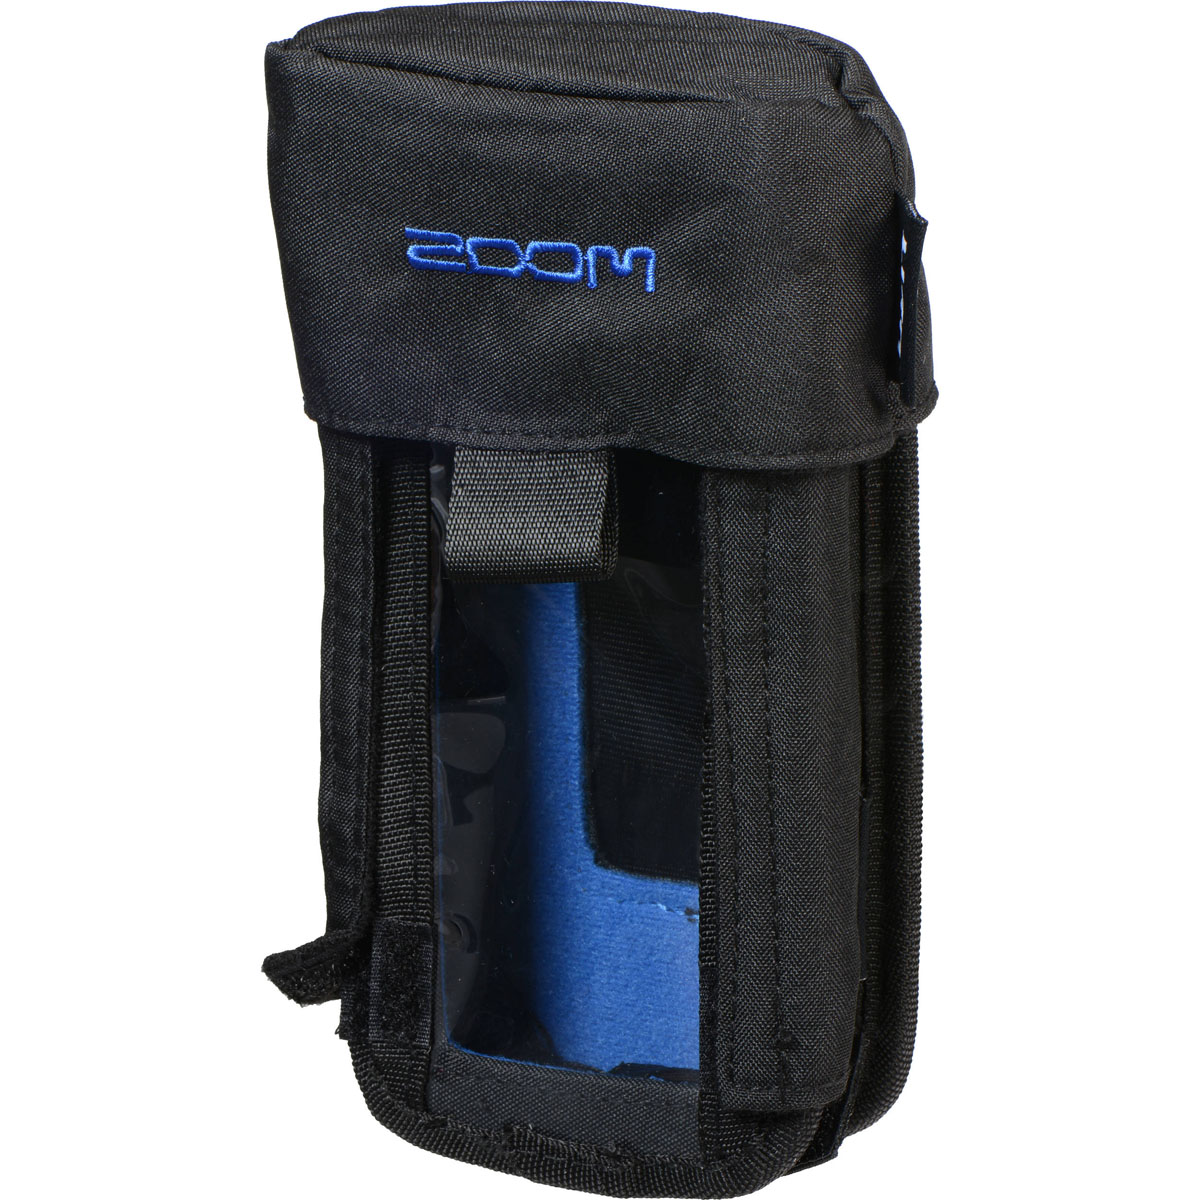 Zoom PCH-4n - Funda protectora